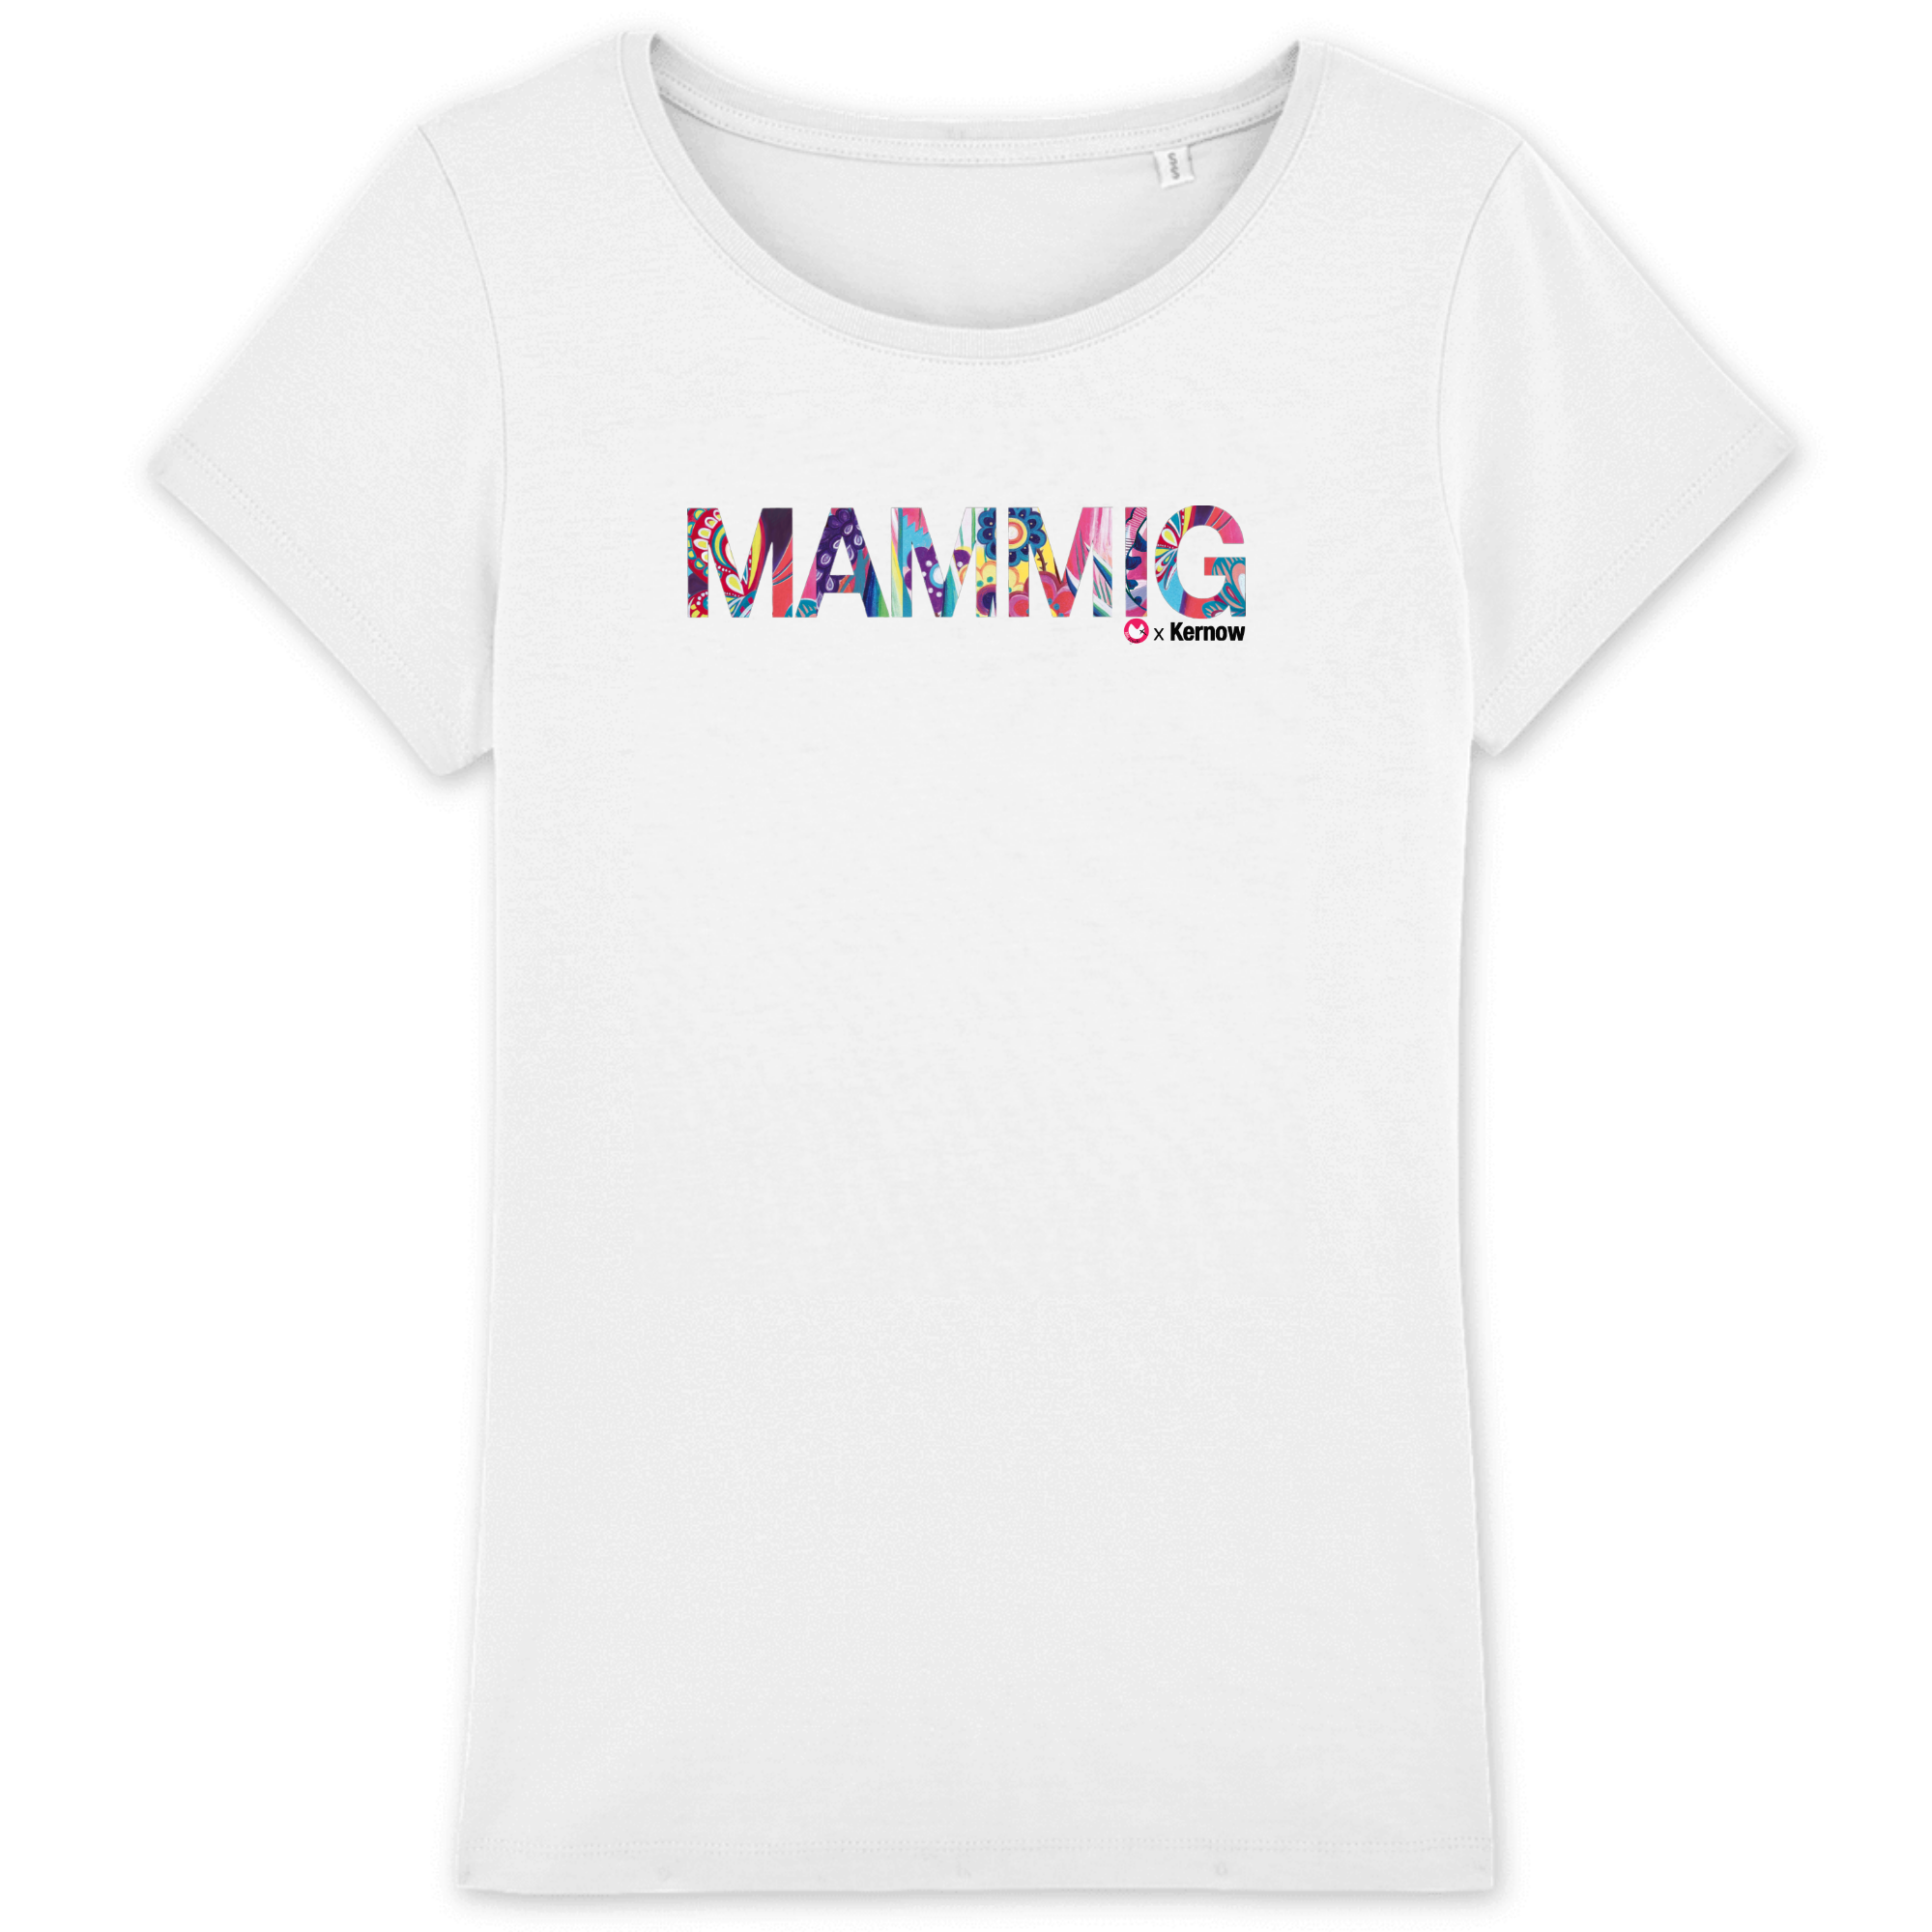 Mammig T-shirt Collab Misst1guett (Maman)